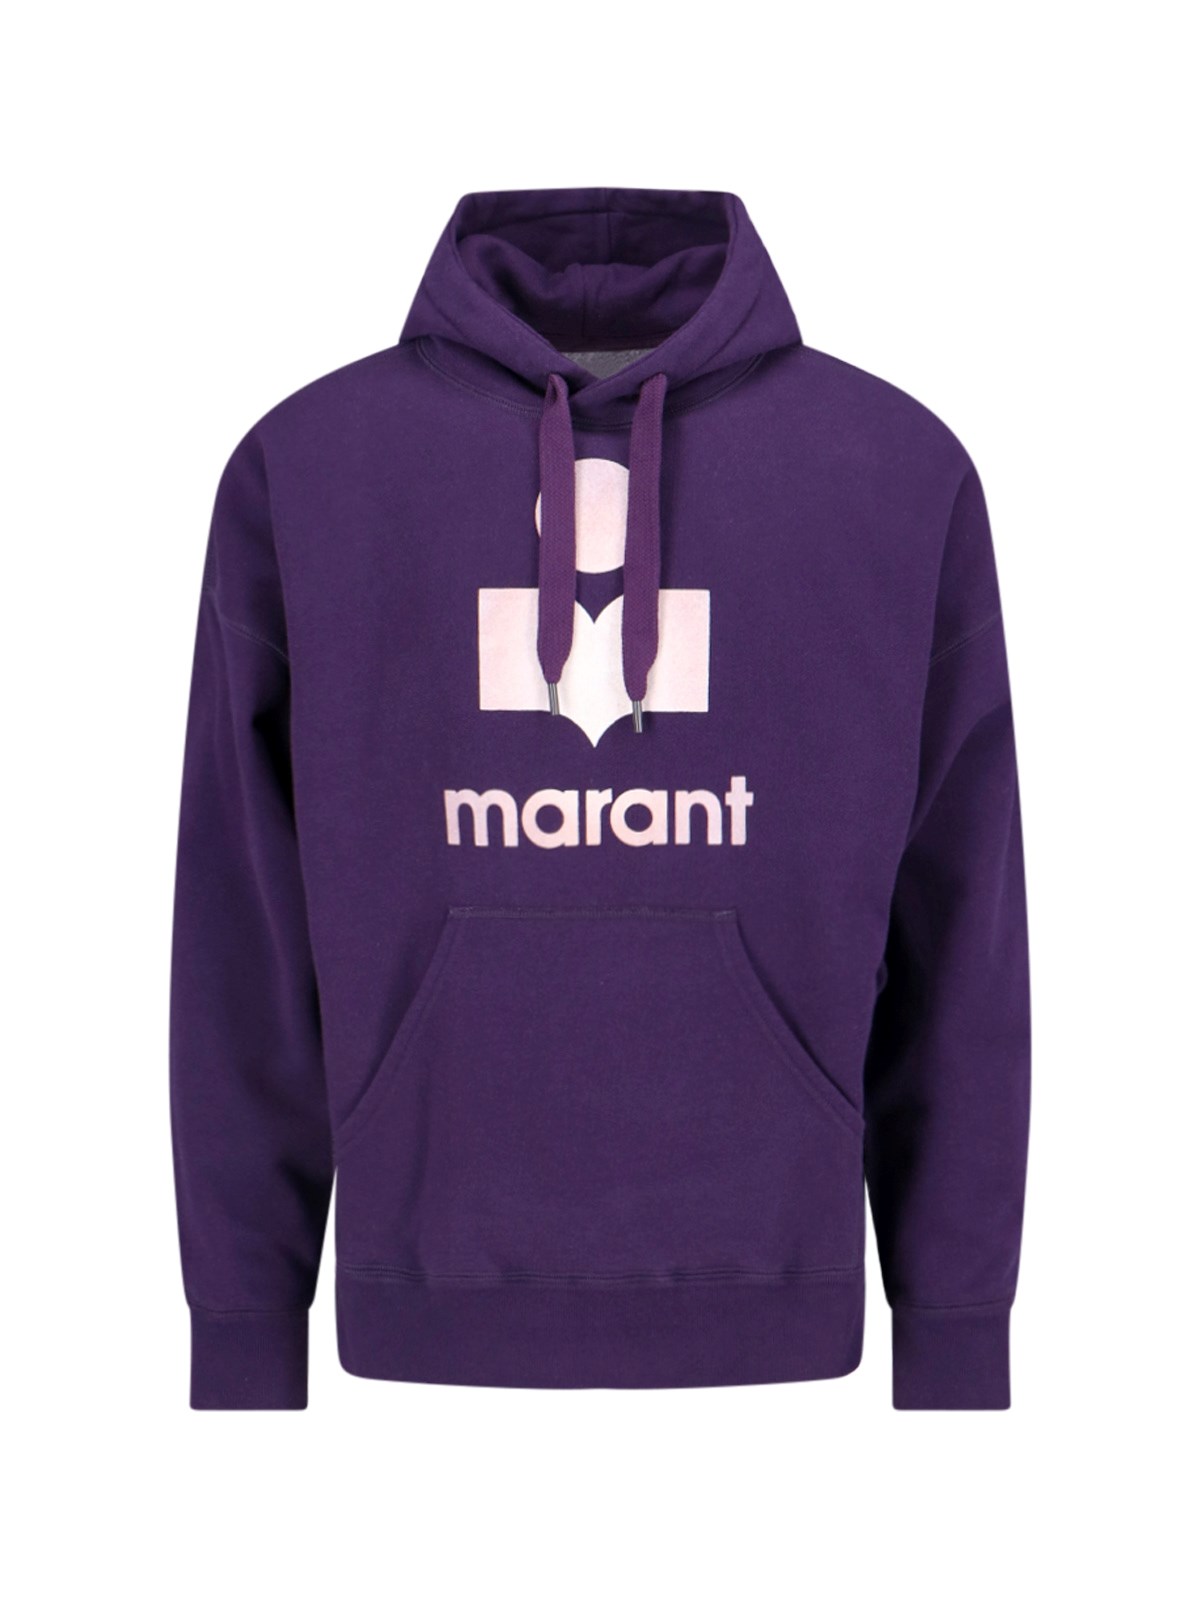 Isabel Marant "miley" Hoodie In Purple